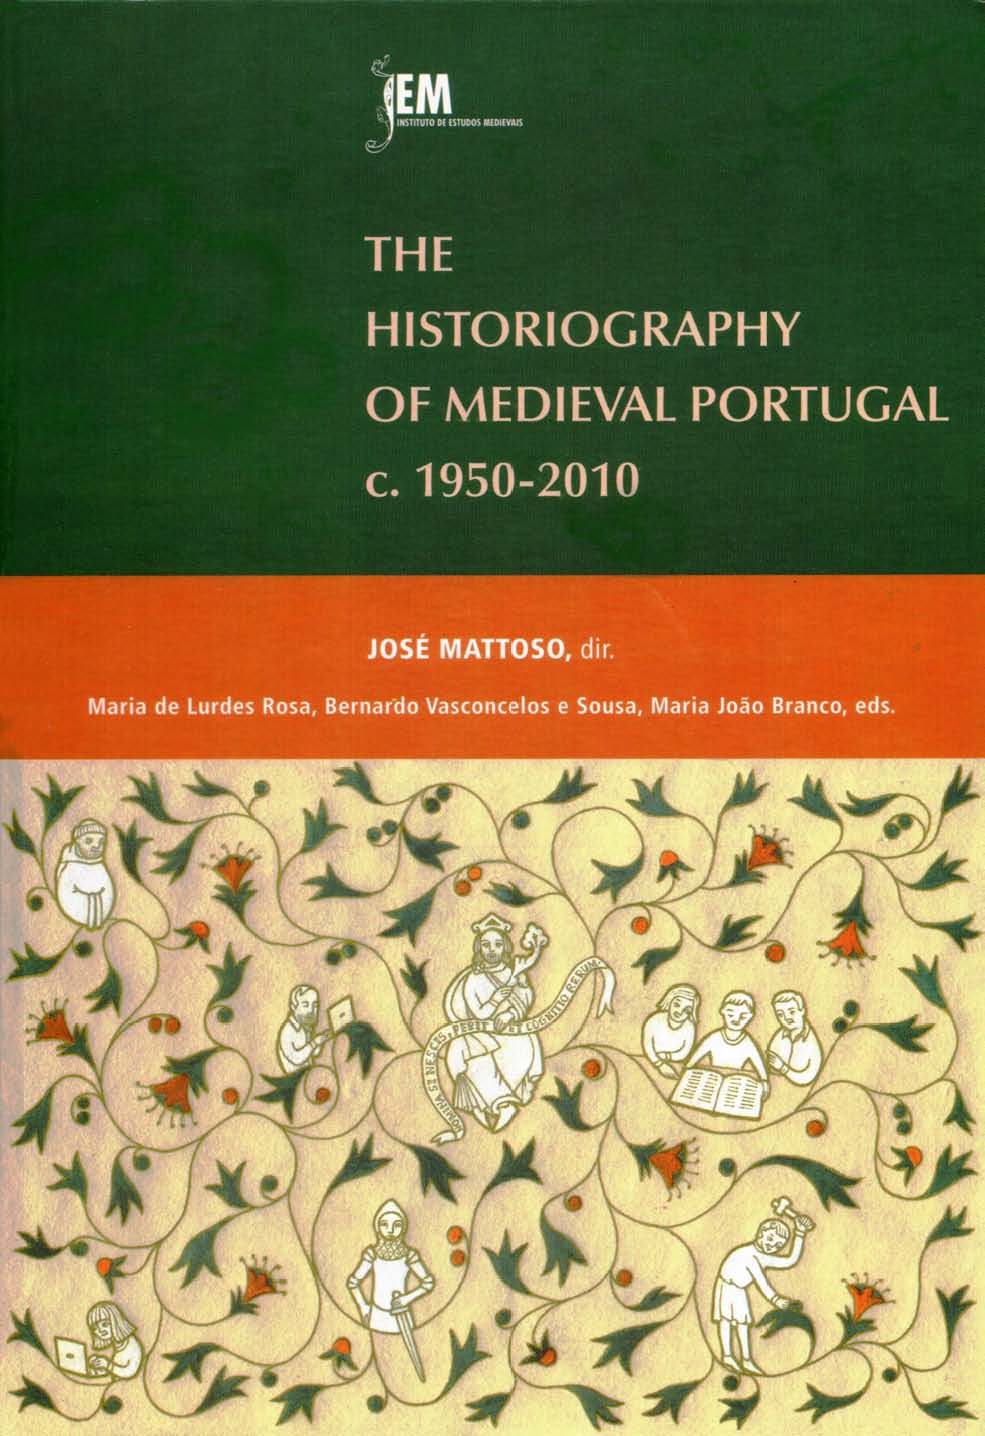 Capa da publicação The Historiography of Medieval Portugal, c. 1950-2010